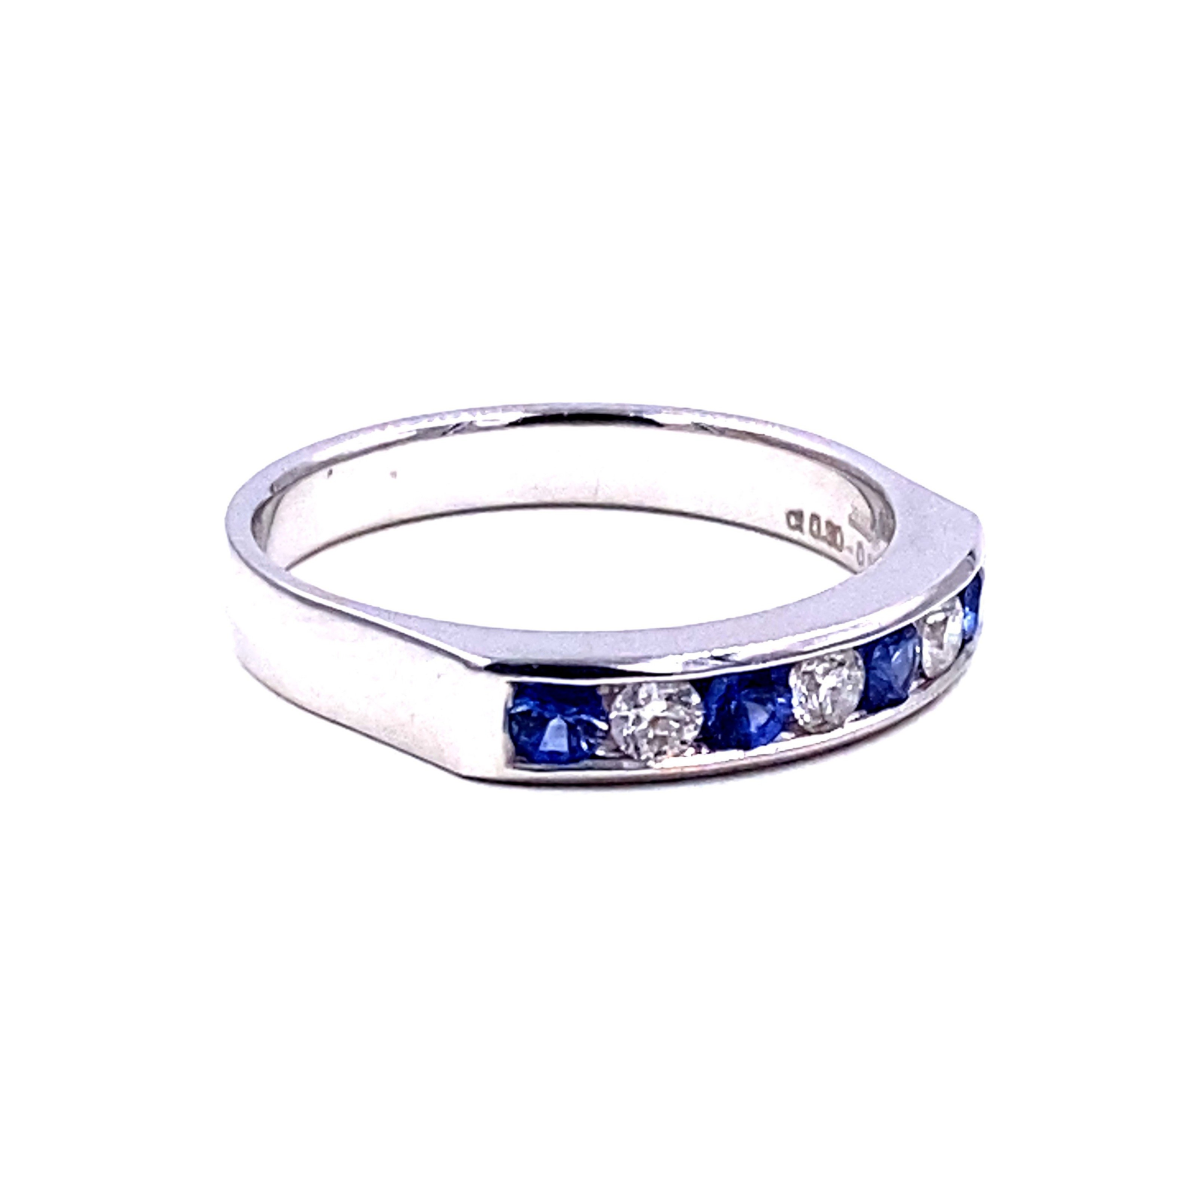 riviere anello mirco visconti con zaffiri blu e diamanti bianchi e oro bianco 18 carati. modello riviere a binario ct 0,30